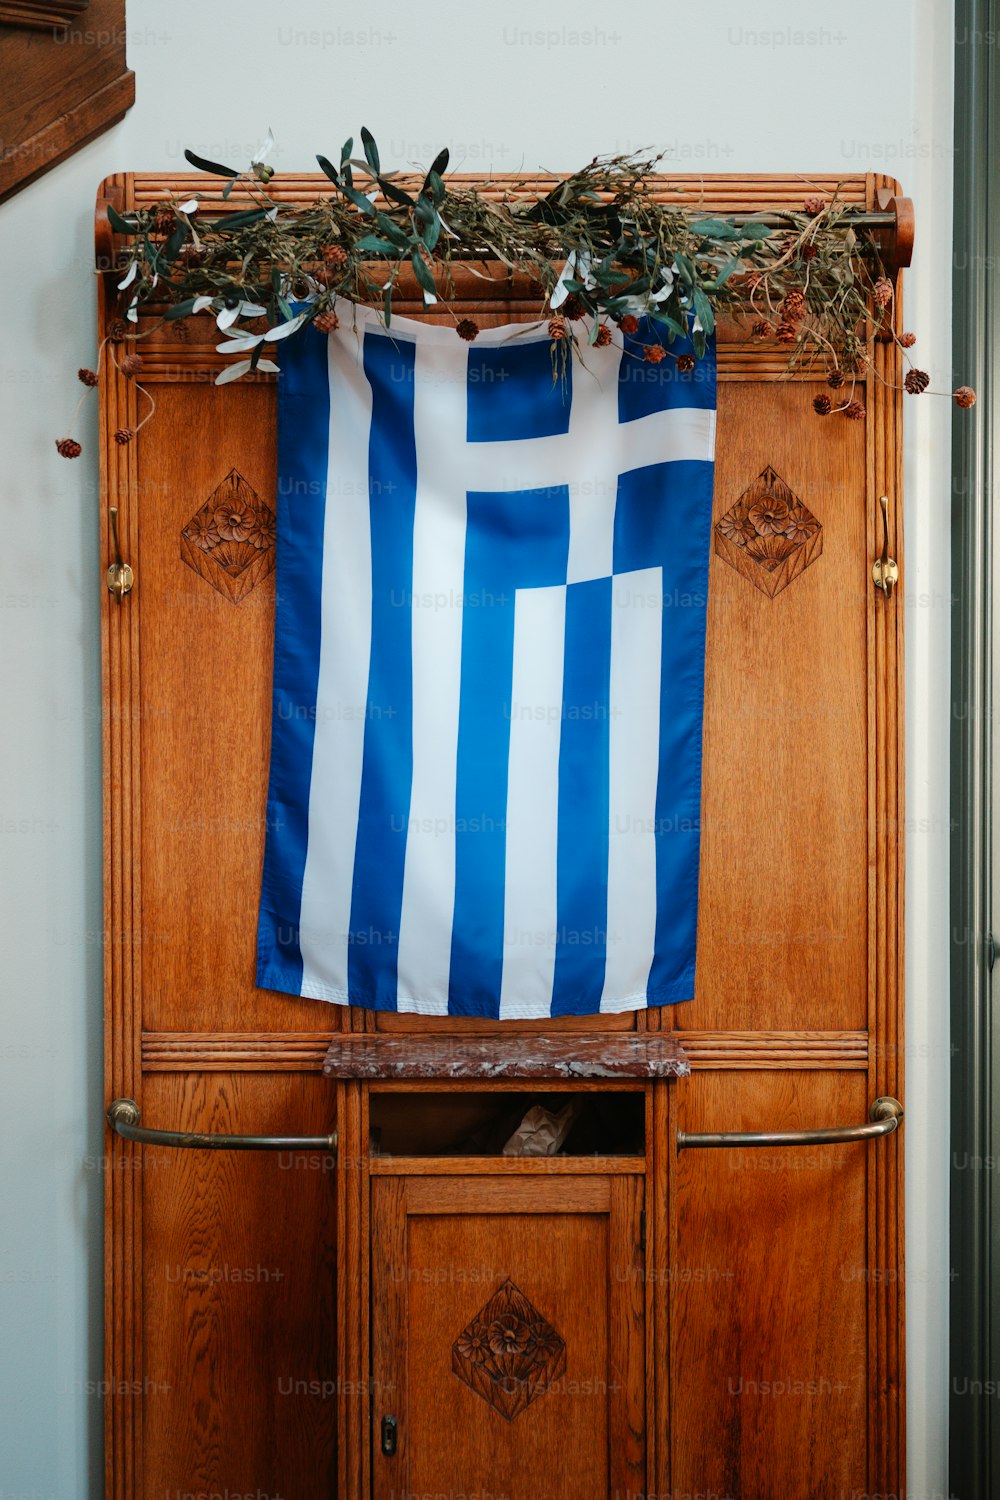 eine blau-weiße Fahne hängt an einem Holzschrank